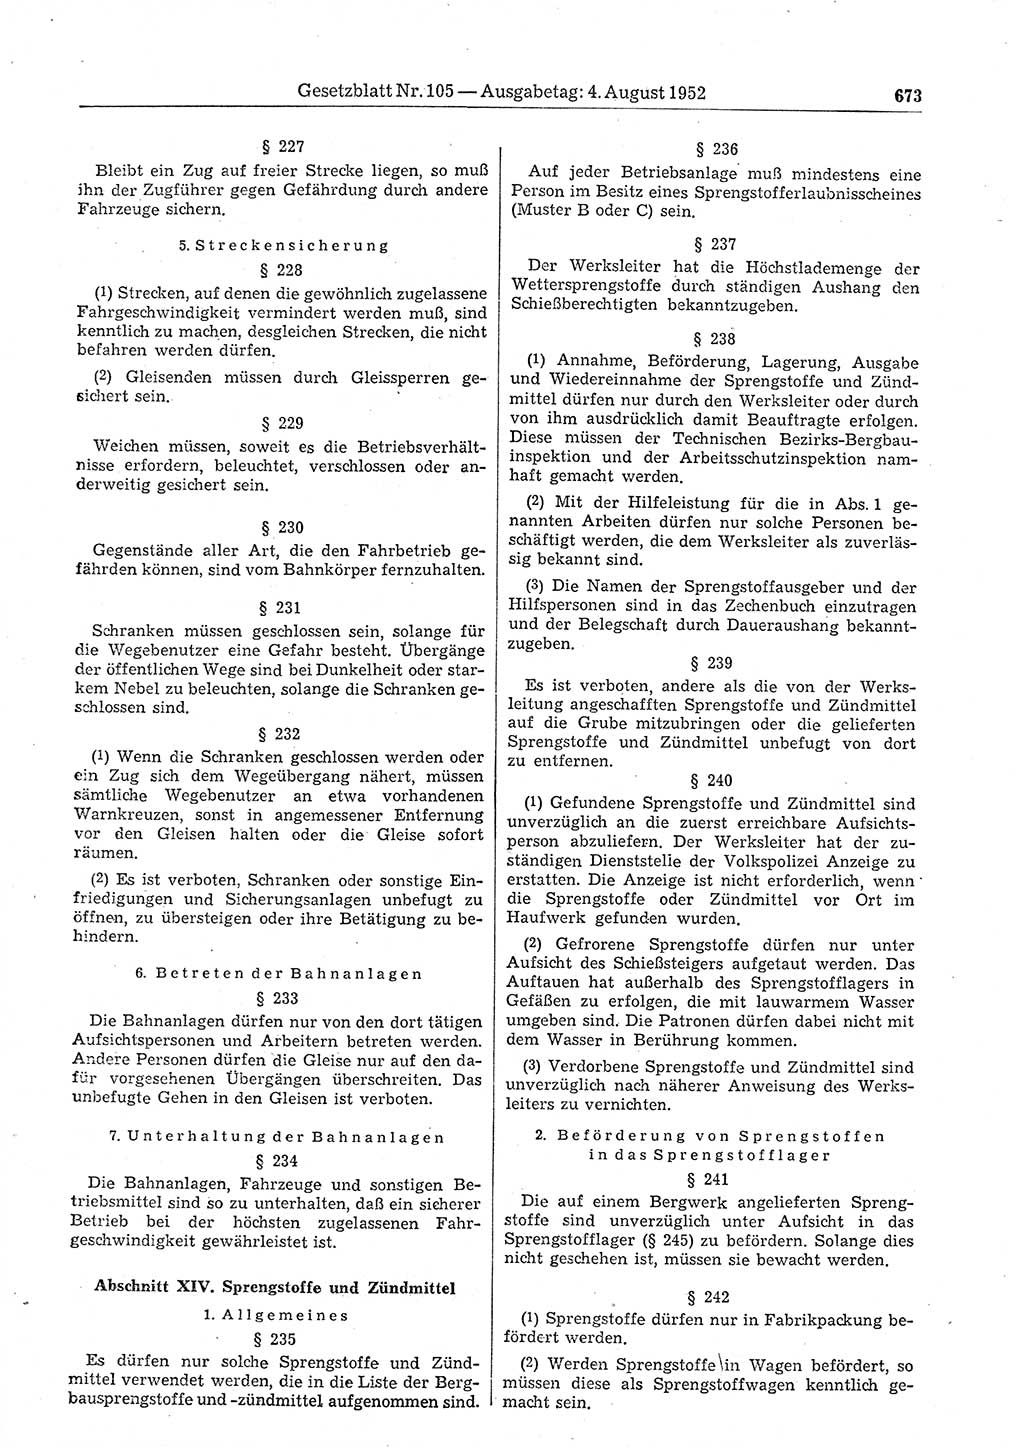 Gesetzblatt (GBl.) der Deutschen Demokratischen Republik (DDR) 1952, Seite 673 (GBl. DDR 1952, S. 673)